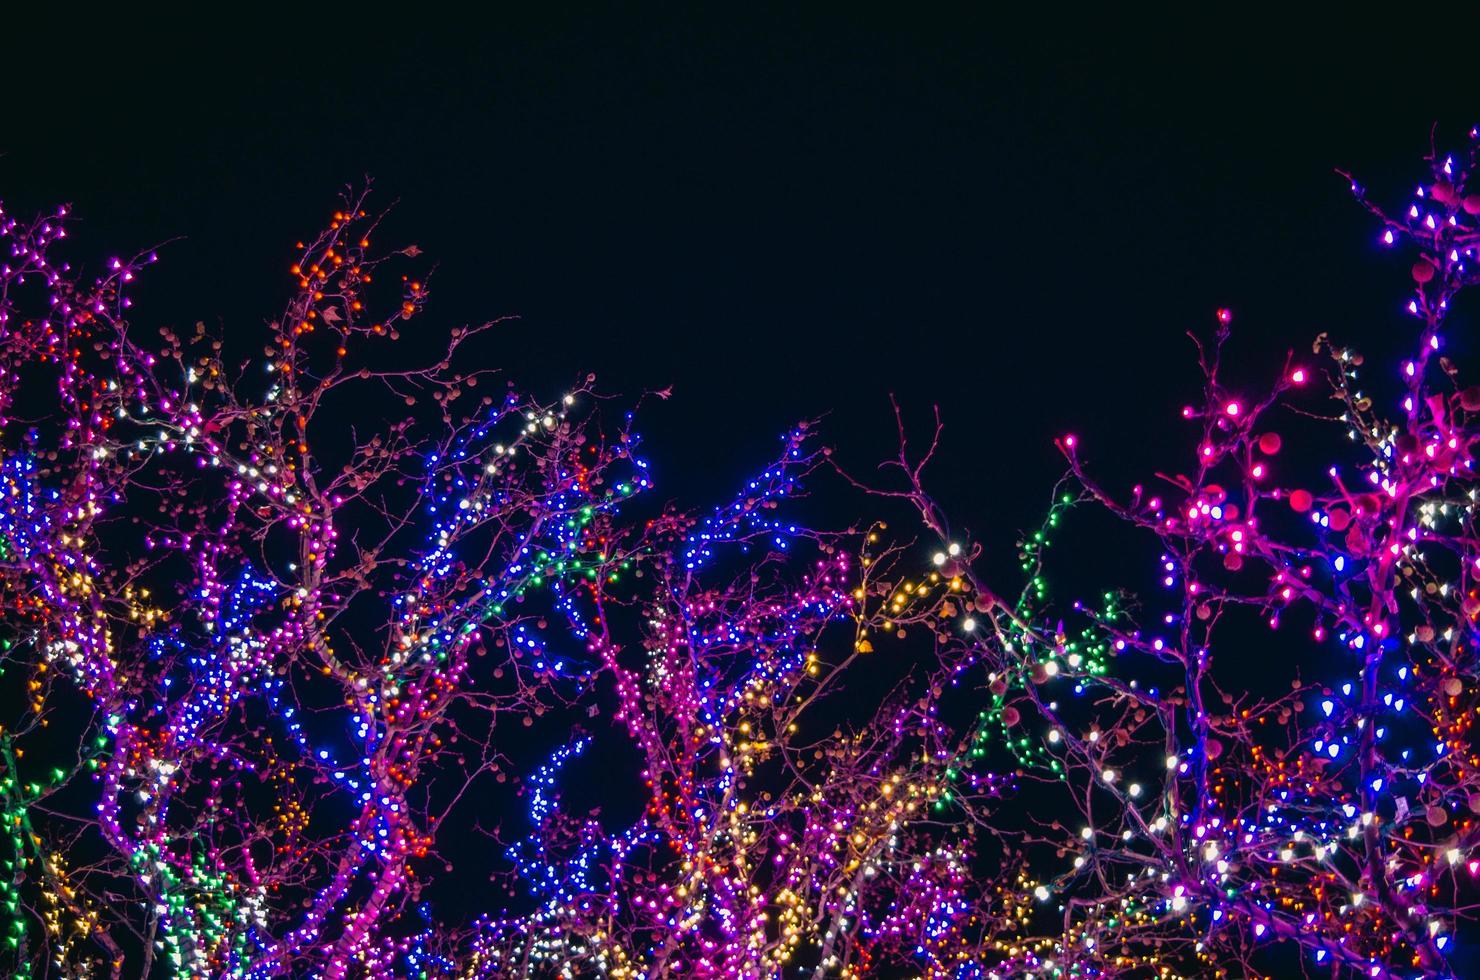 Bäume, die nachts mit bunten Lichterketten bedeckt sind foto